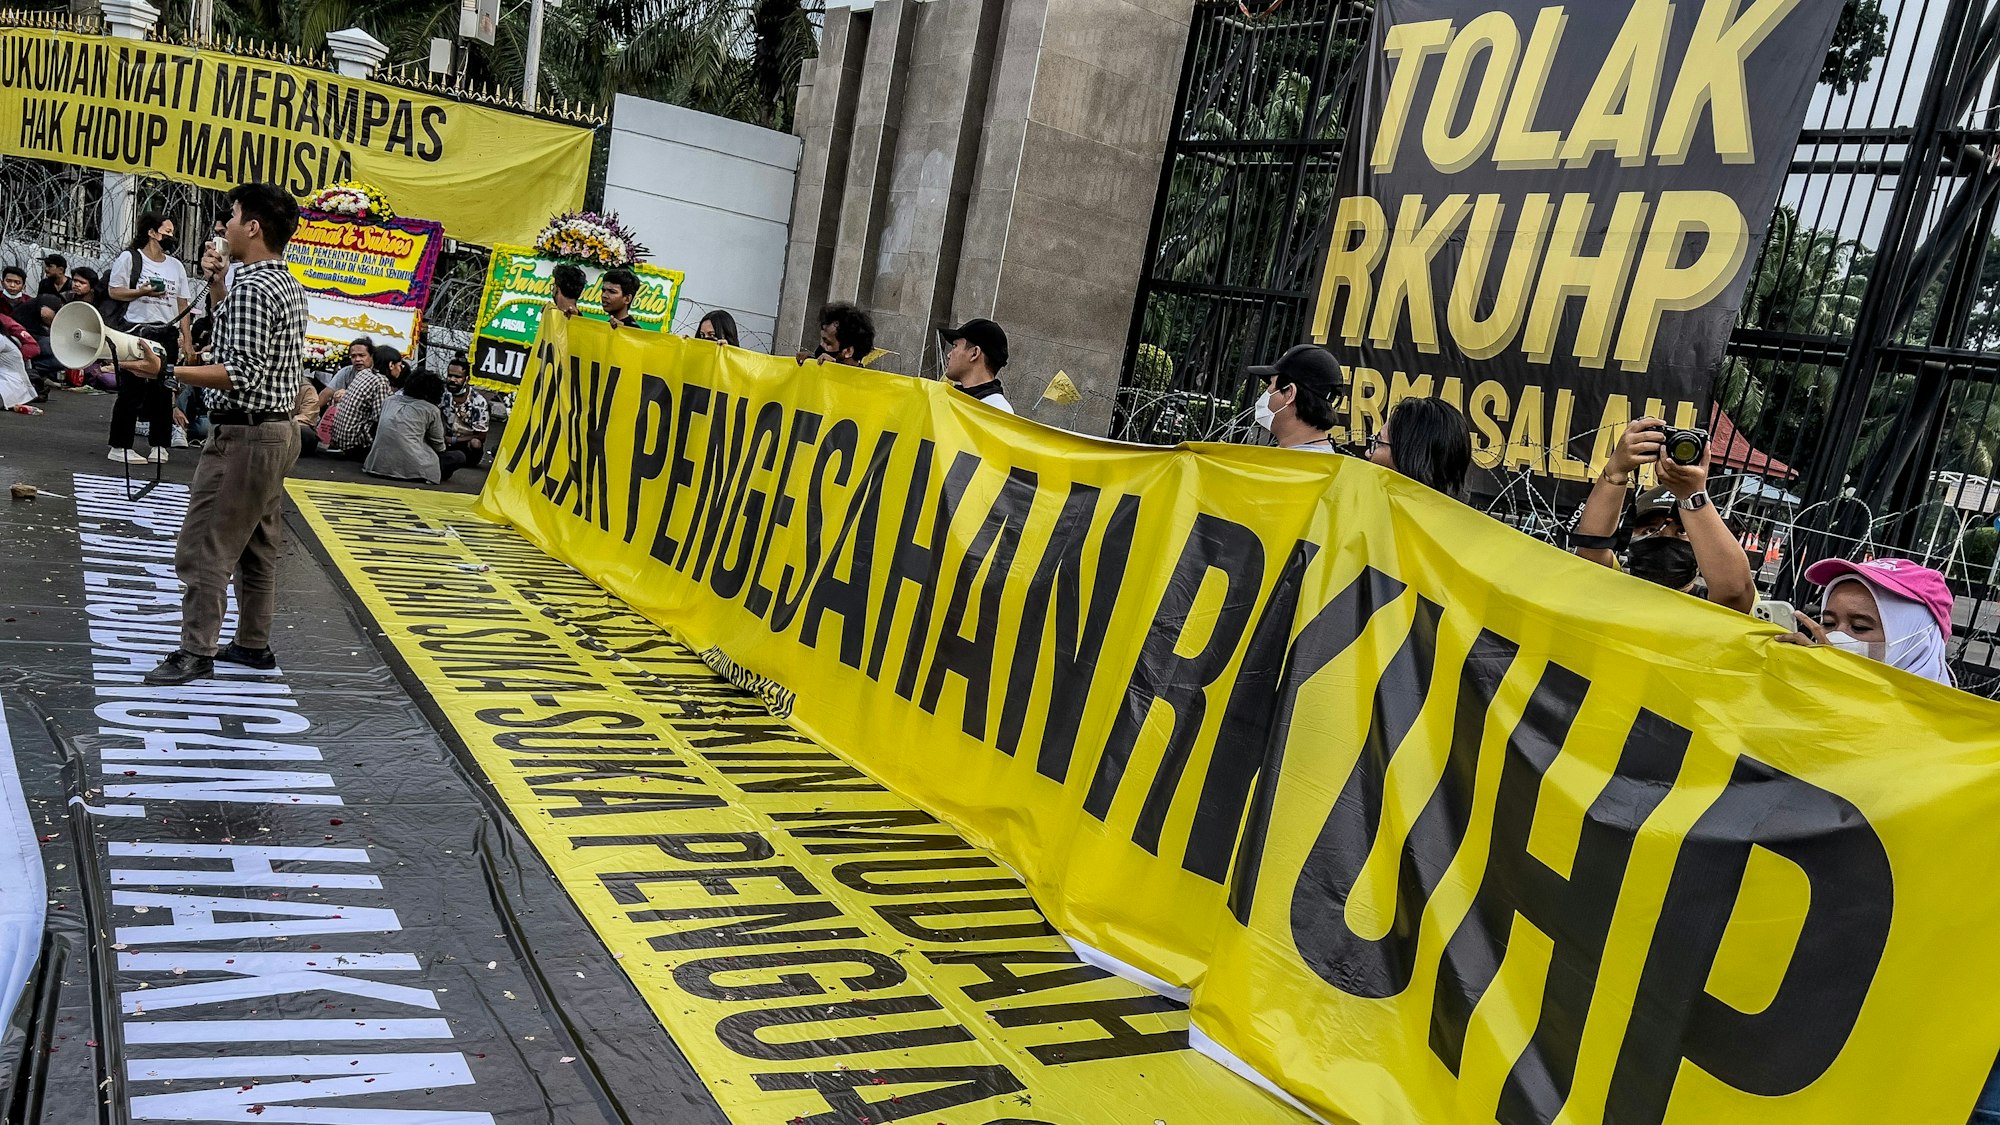 Das Foto zeigt eine indonesische Protestaktion mit gelb-schwarzen Bannern und vielen Menschen.